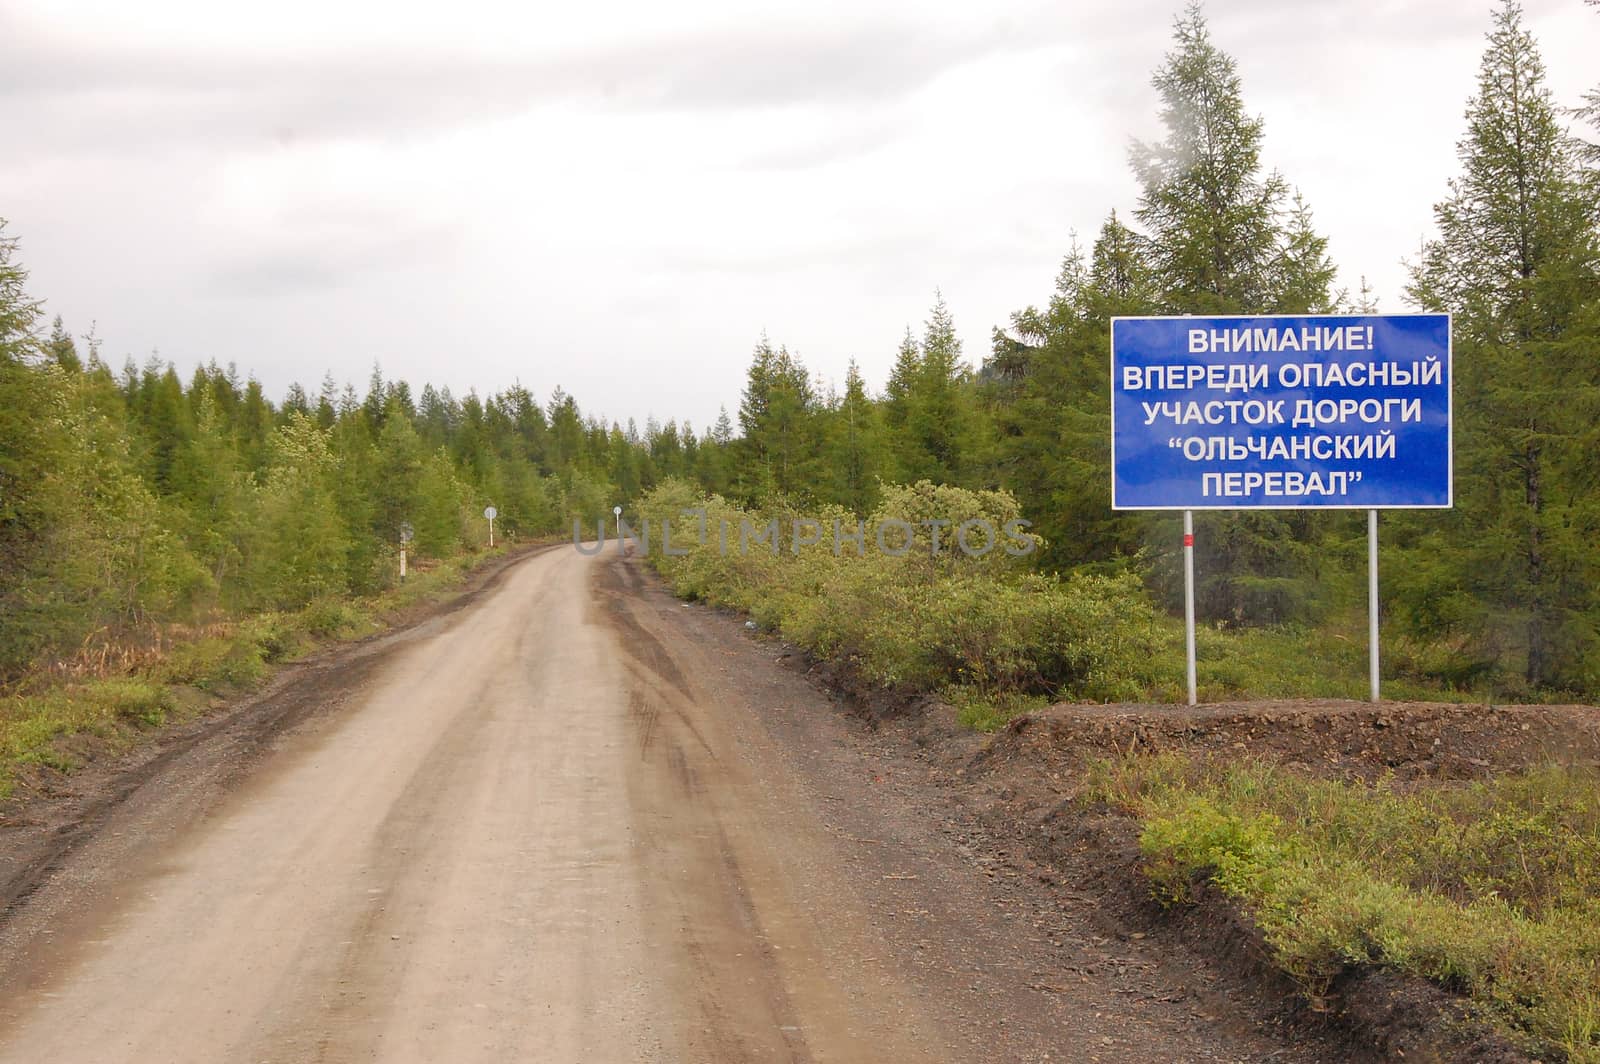 Road sign at gravel road Kolyma highway outback Russia, Magadan and Yakutia region